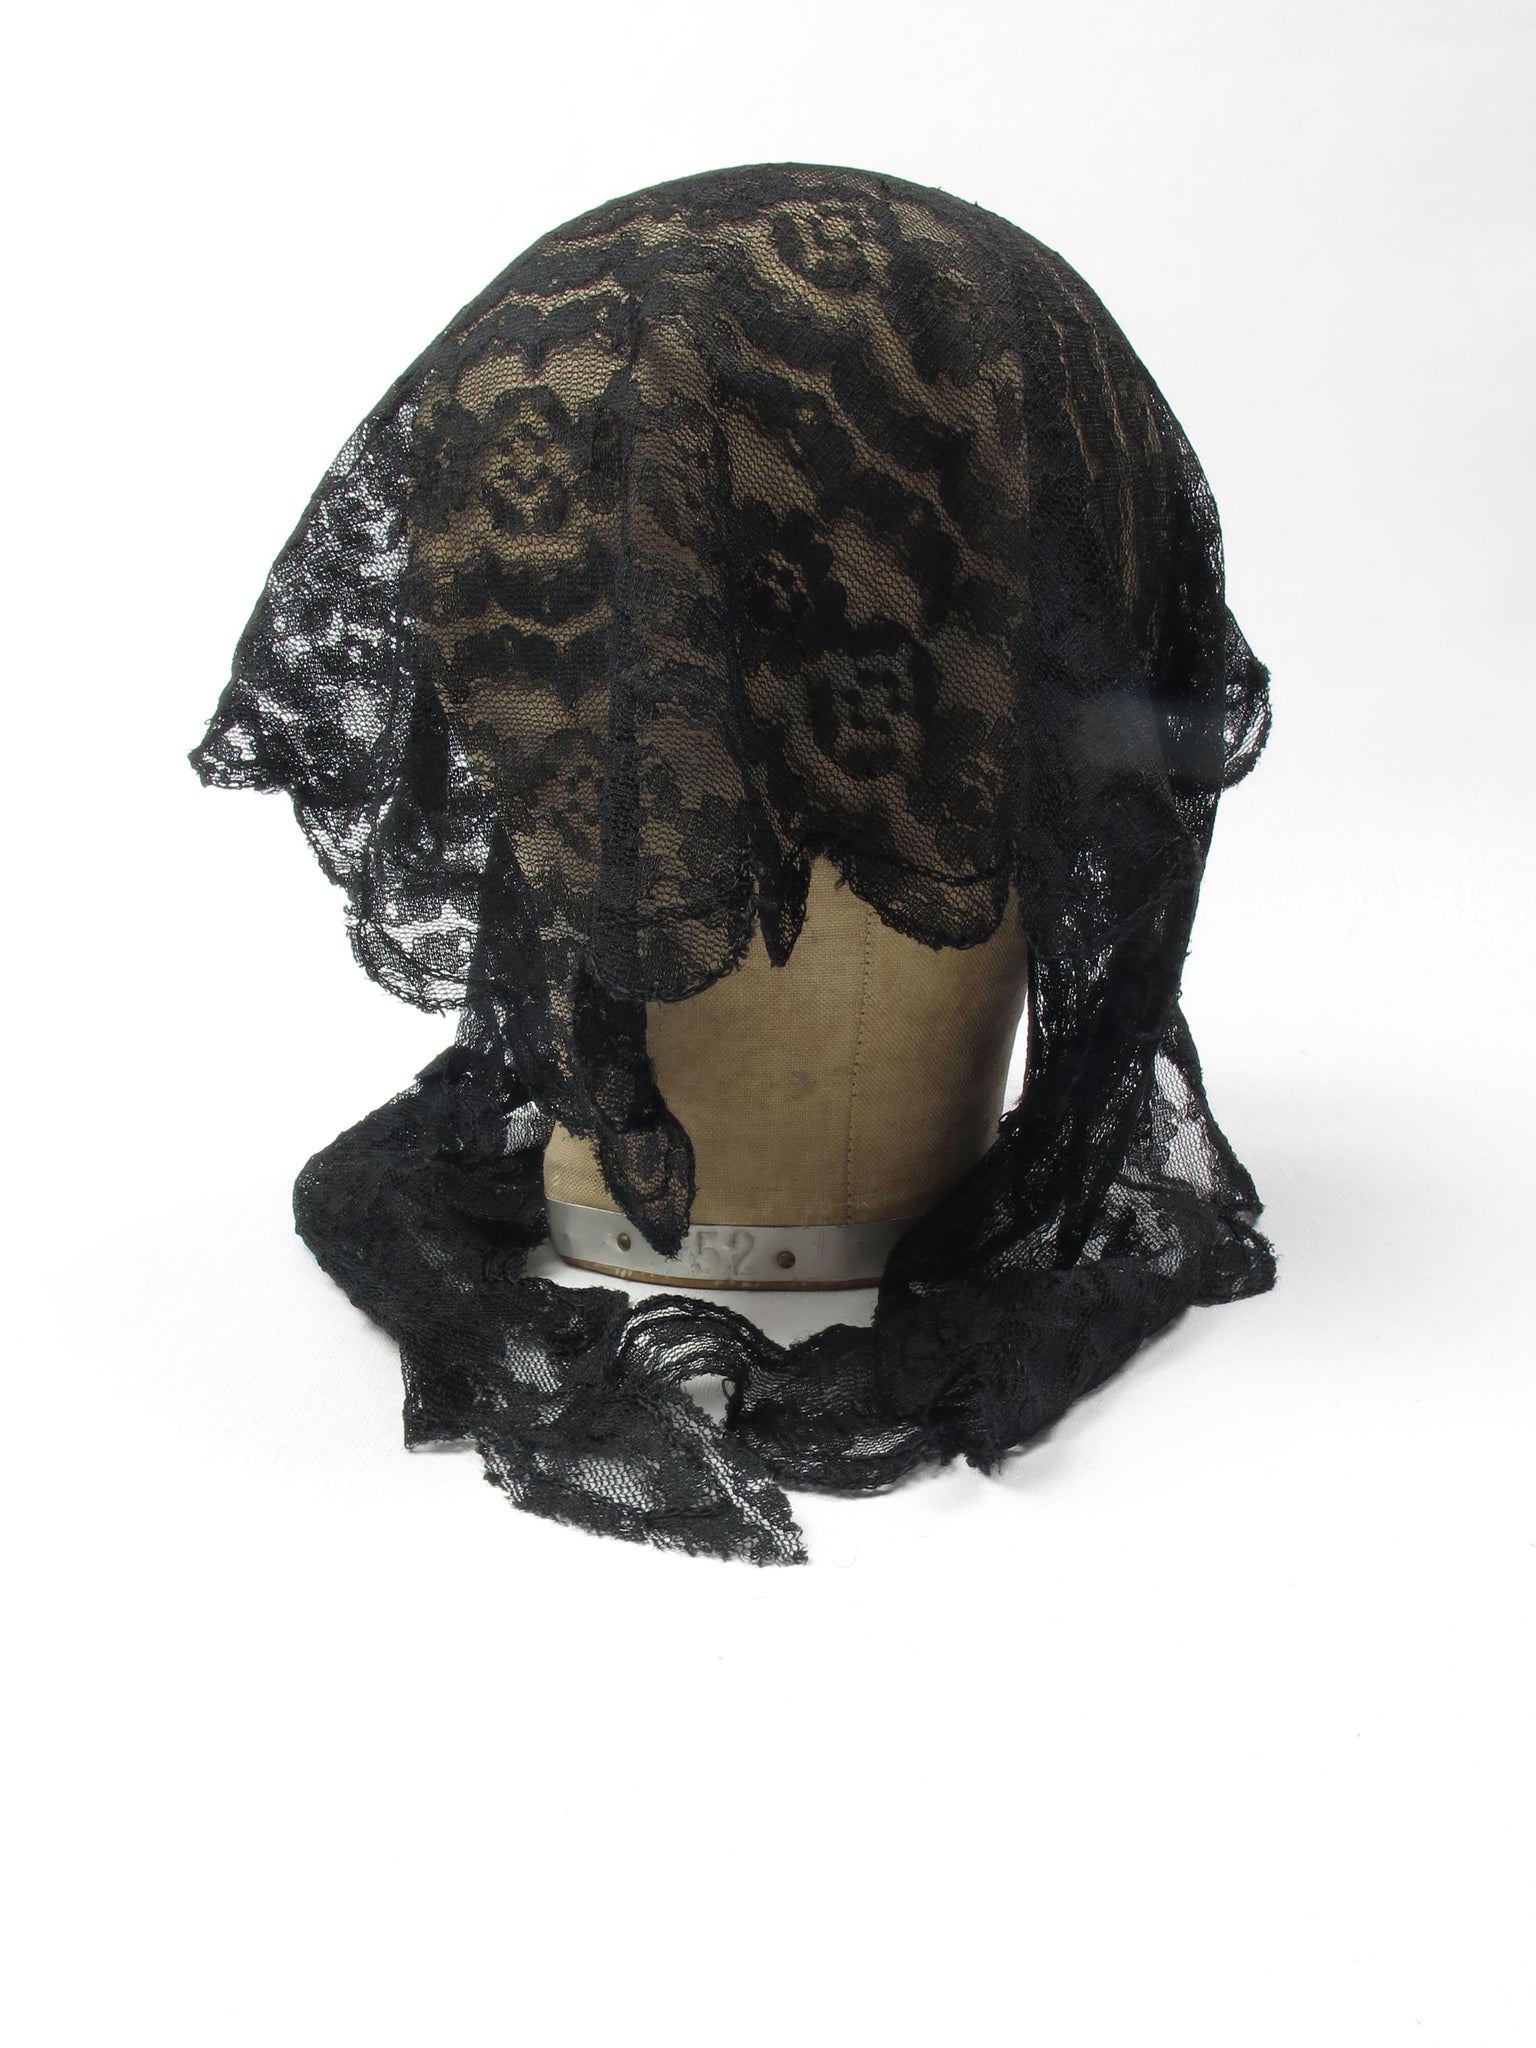 Vintage Black Lace Mantilla - The Harlequin